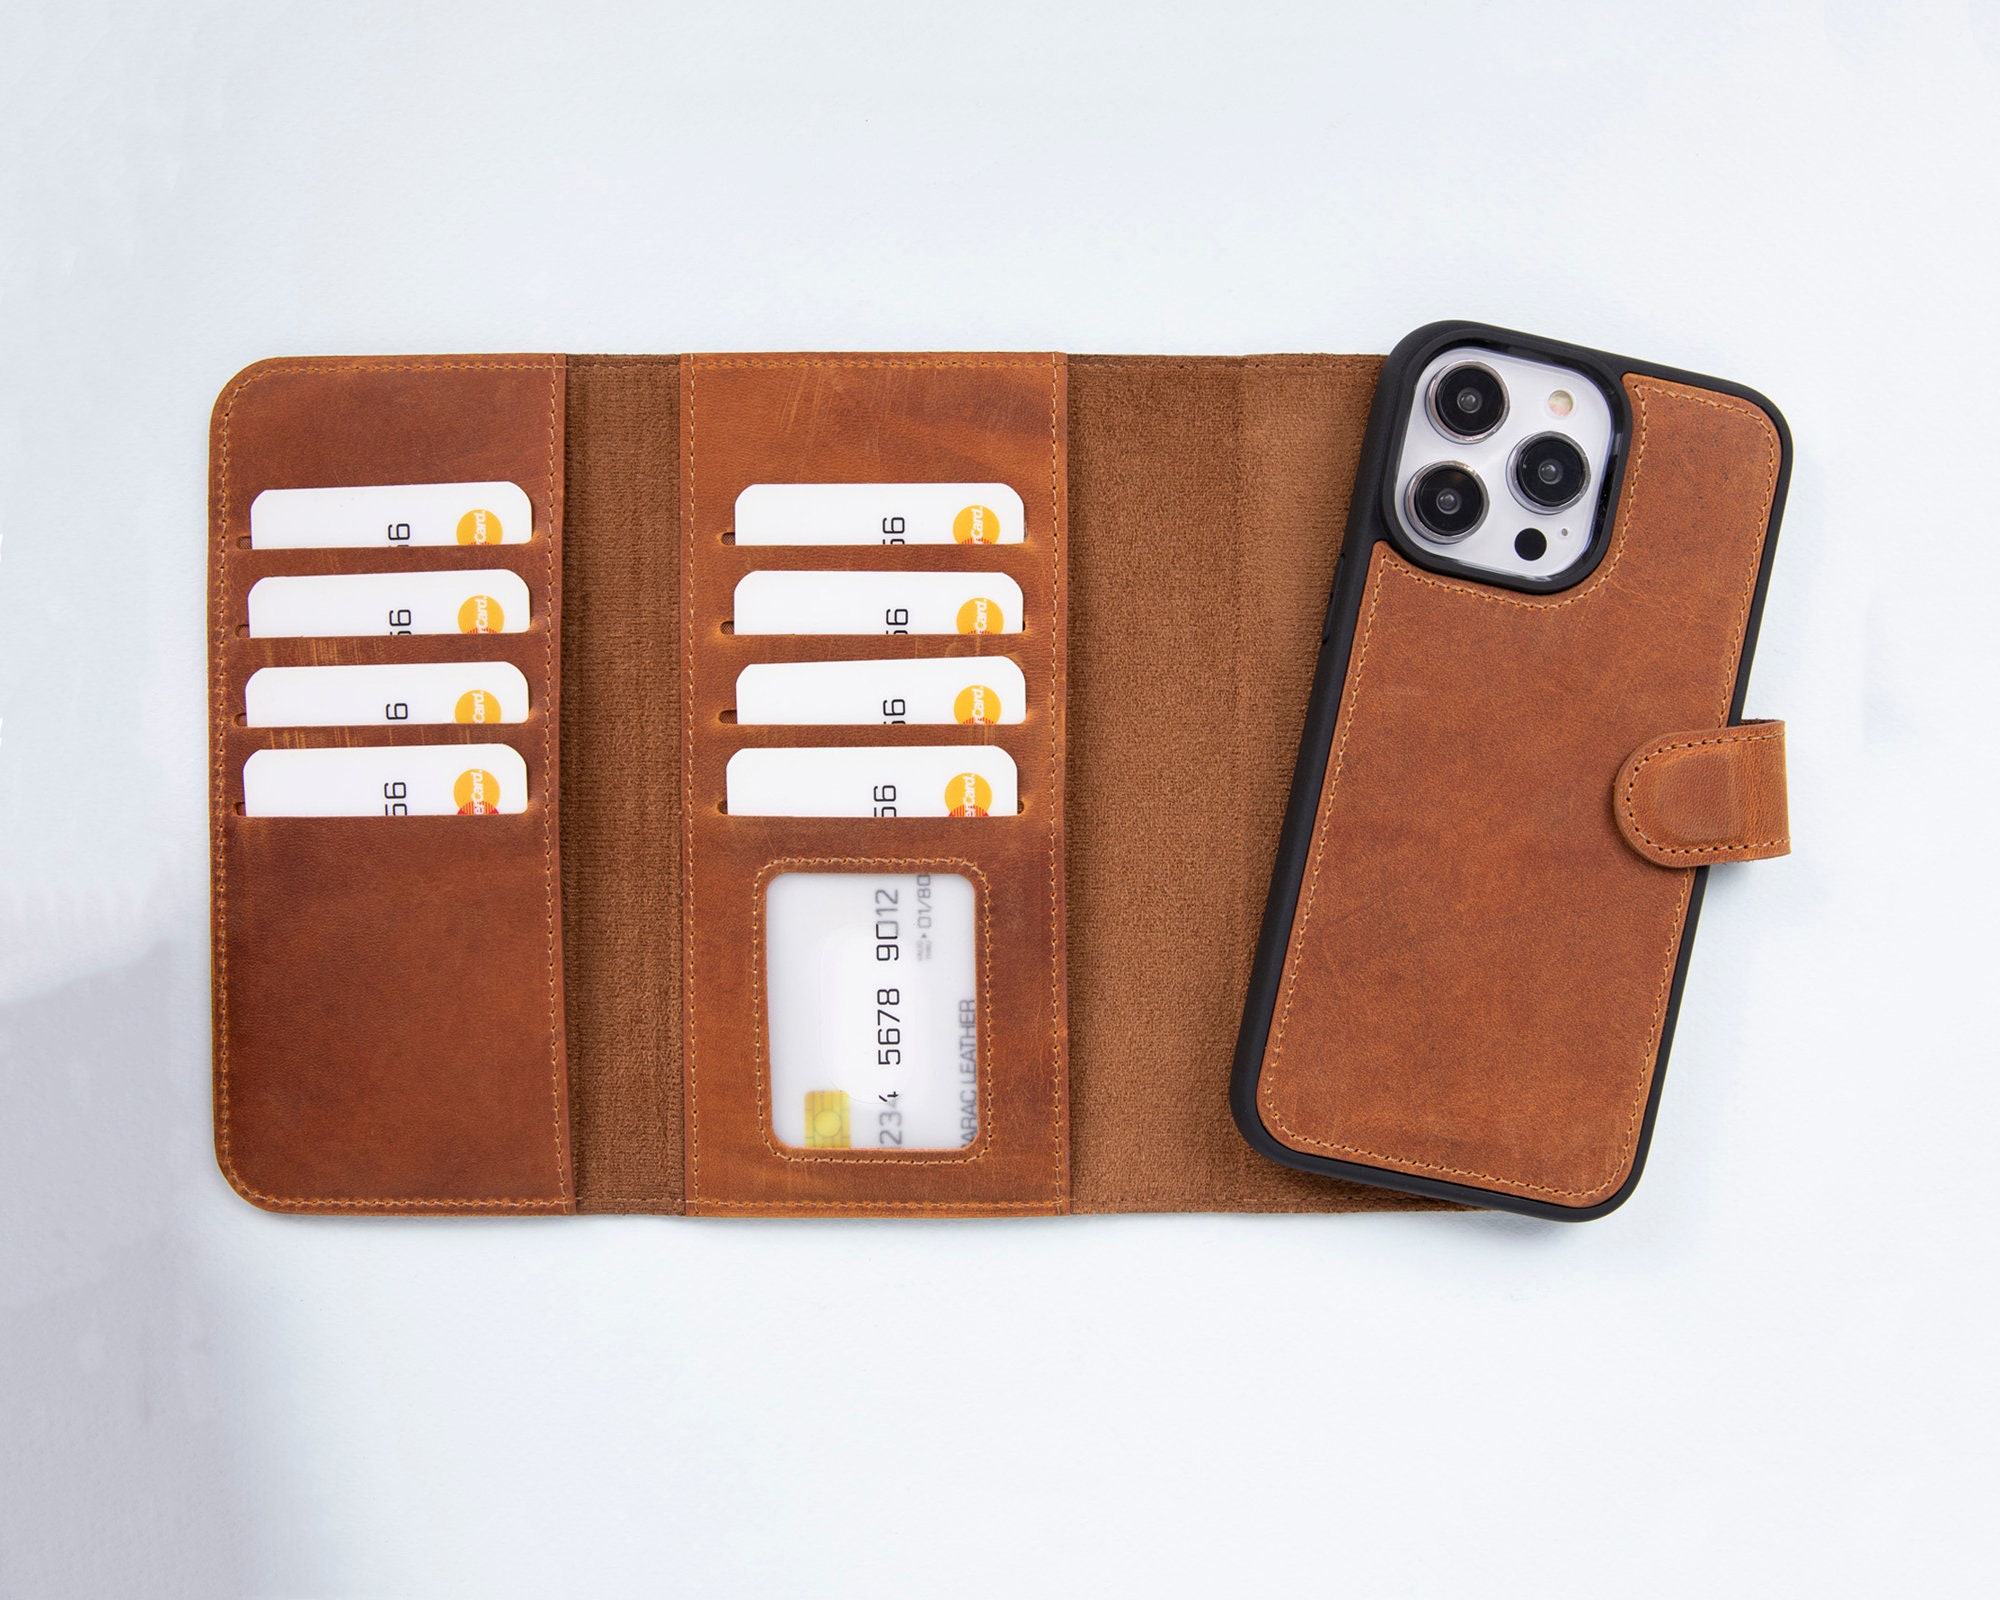 Funda para iPhone 15 Pro - Con MagSafe - Incluye cartera - Naranja